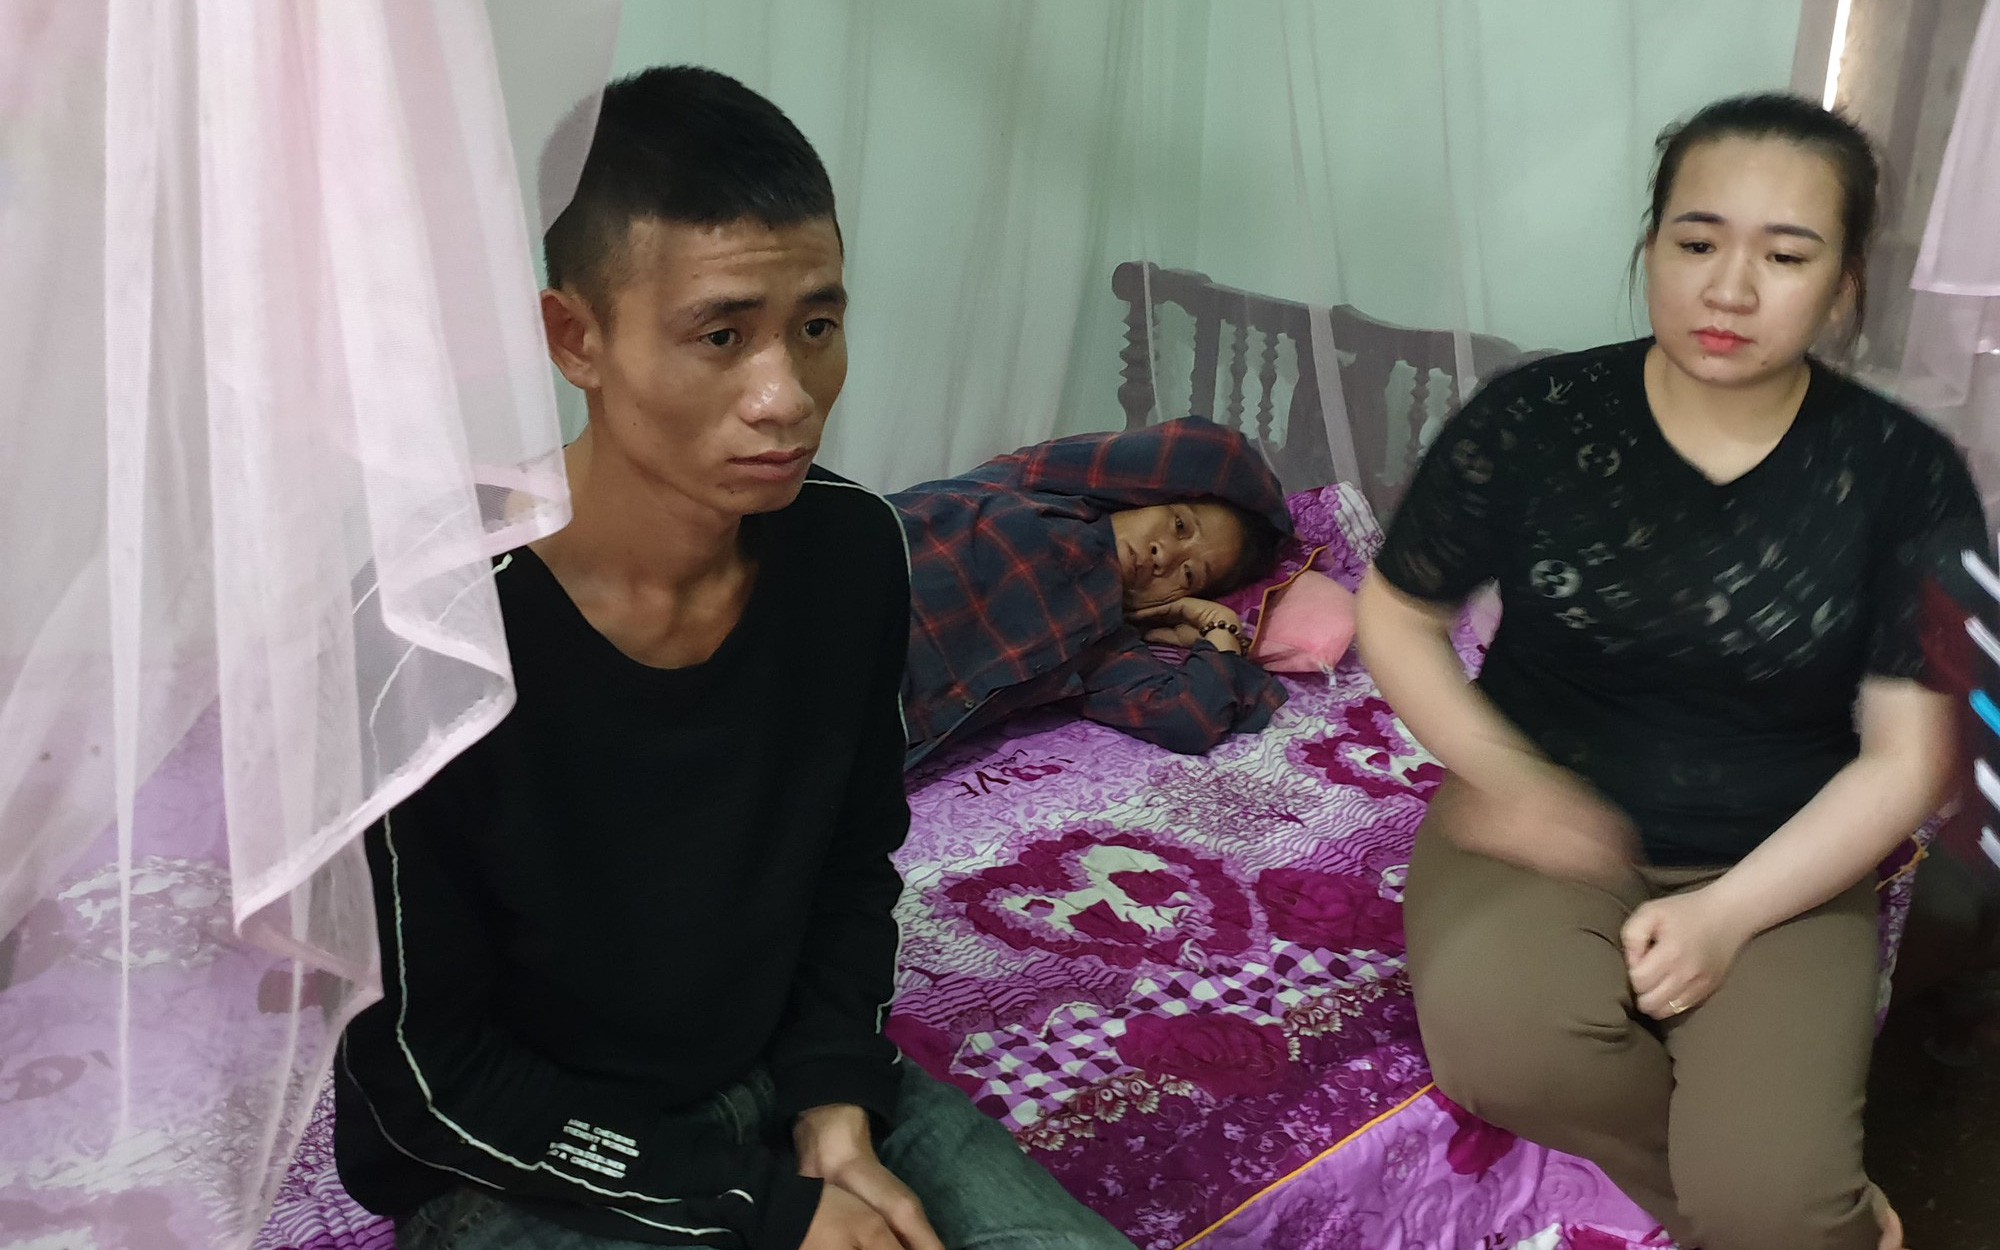 Vụ 39 thi thể trong container: Cảnh sát Anh gọi điện cho gia đình ở Nghệ An hỏi về nhận dạng, đề nghị chờ thông báo chính thức